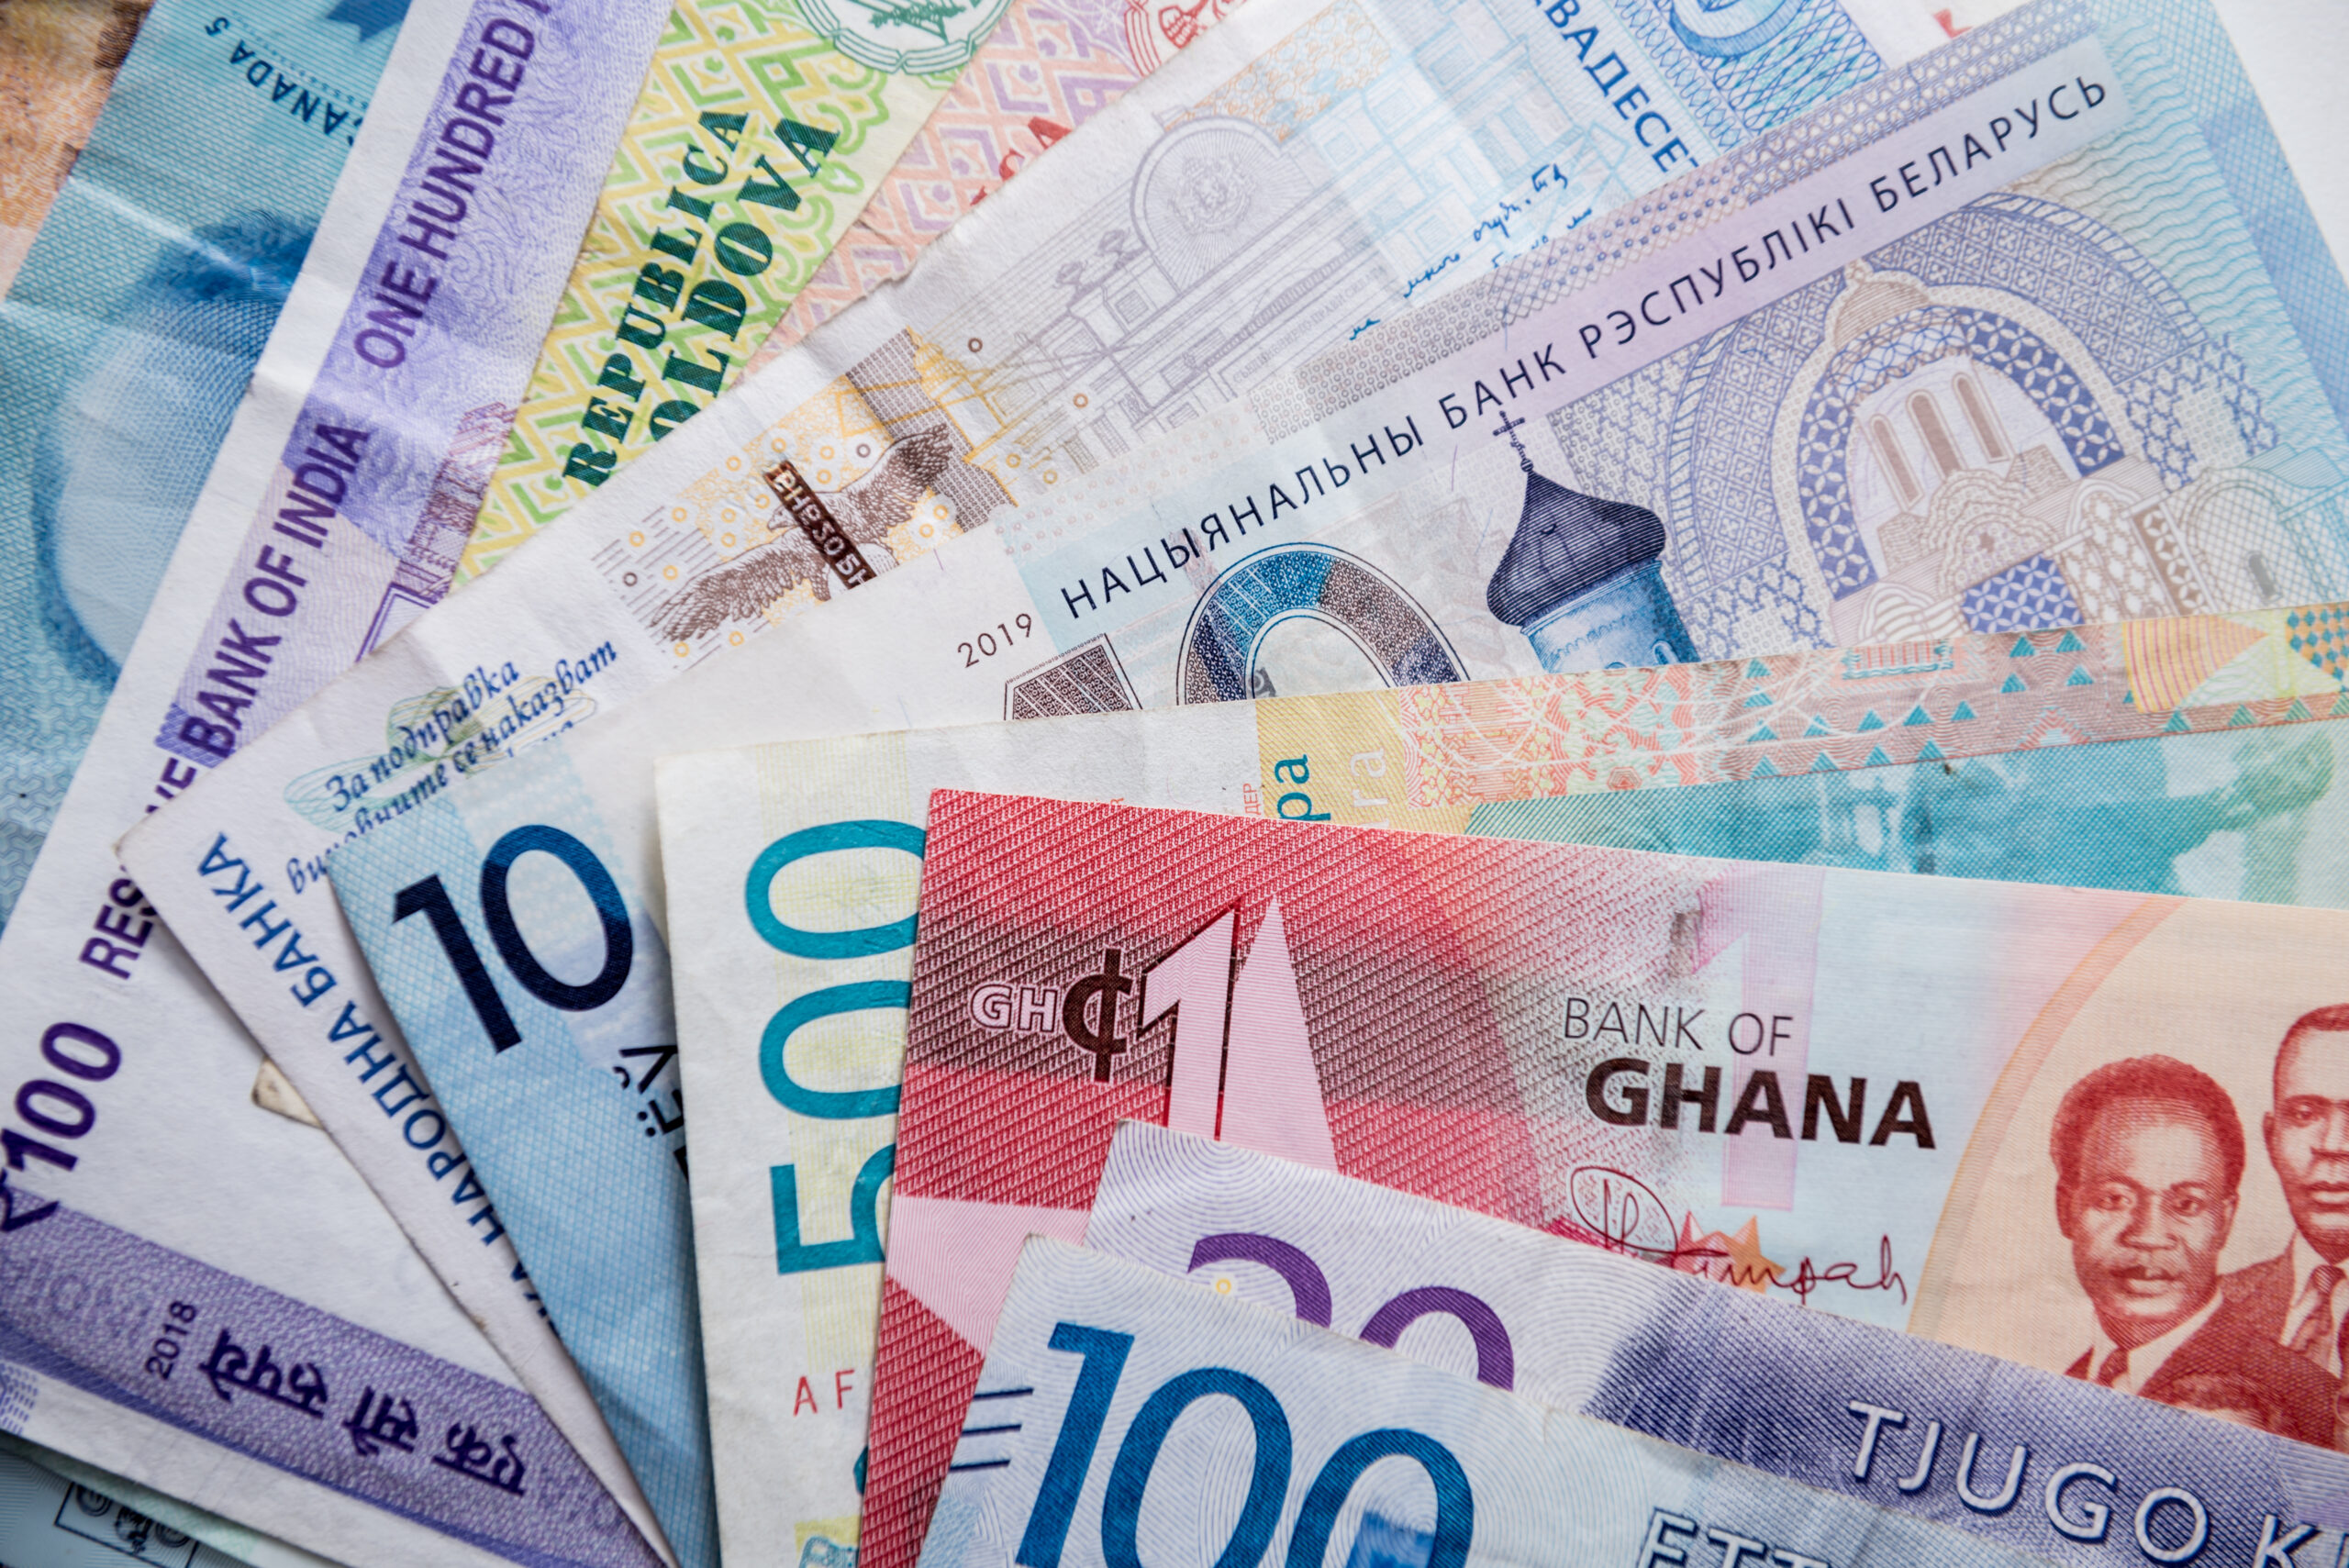 Ile wynoszą notowania euro? Co wpłynęło na cenę? Jakie są prognozy dla notowań euro w nadchodzącym tygodniu 30 kwietnia?